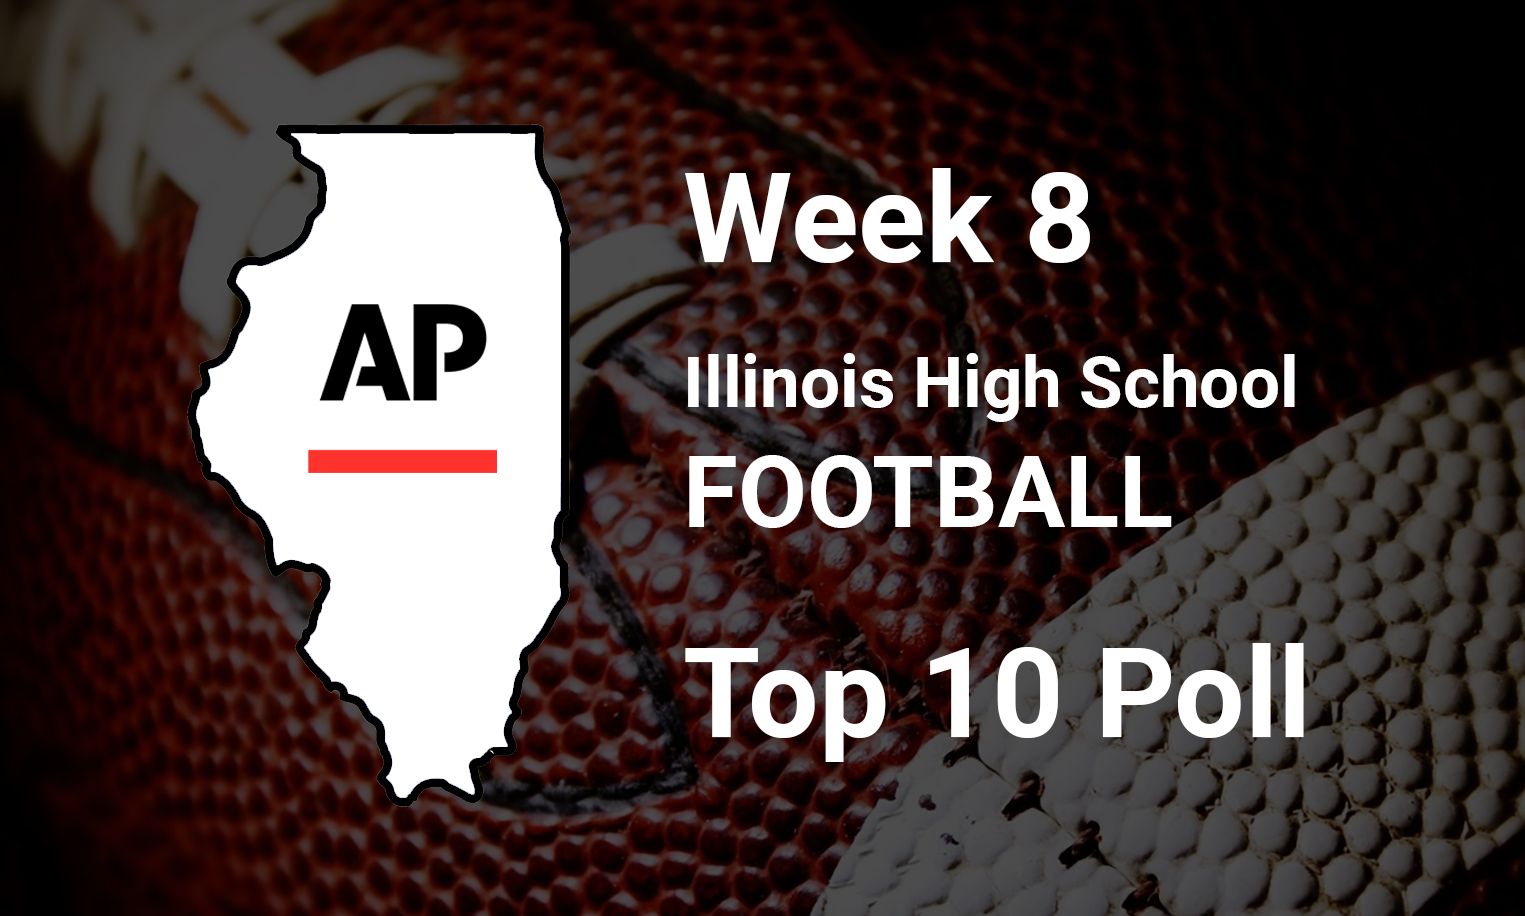 '22 Illinois High School Football Top 10 Poll Week 8